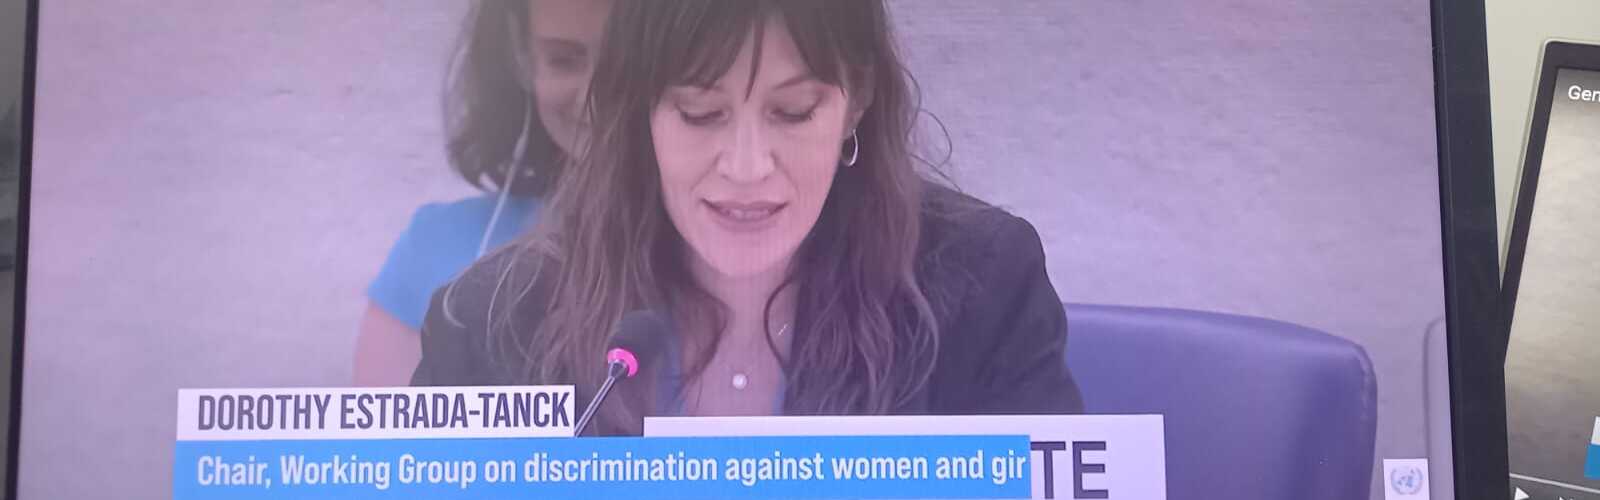 La profesora Dorothy Estrada presenta el informe de la ONU sobre la reacción frente a la igualdad de género